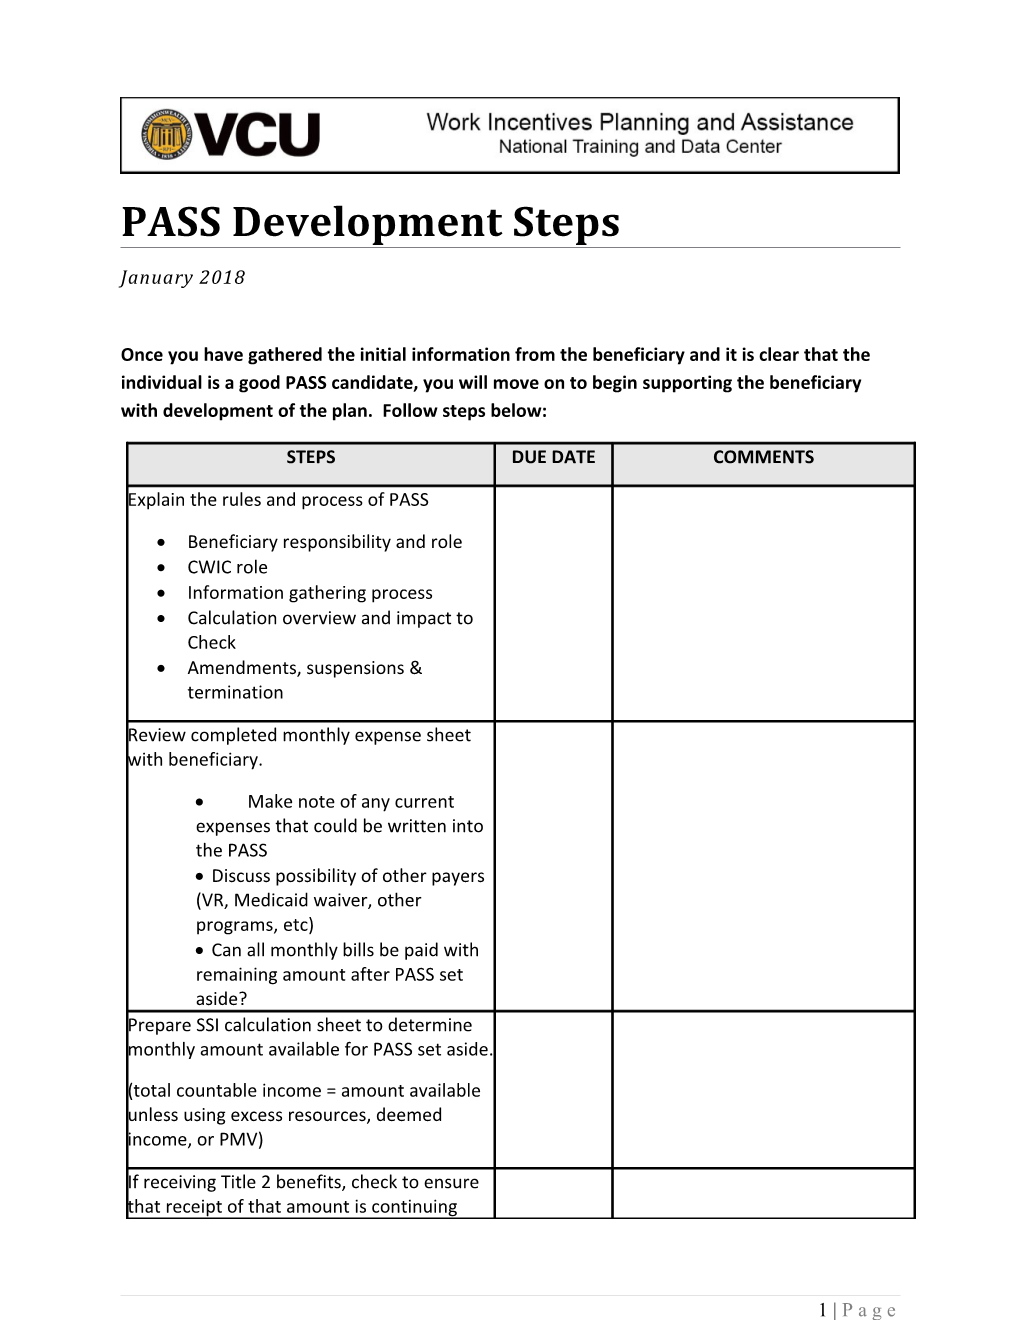 PASS Development Steps